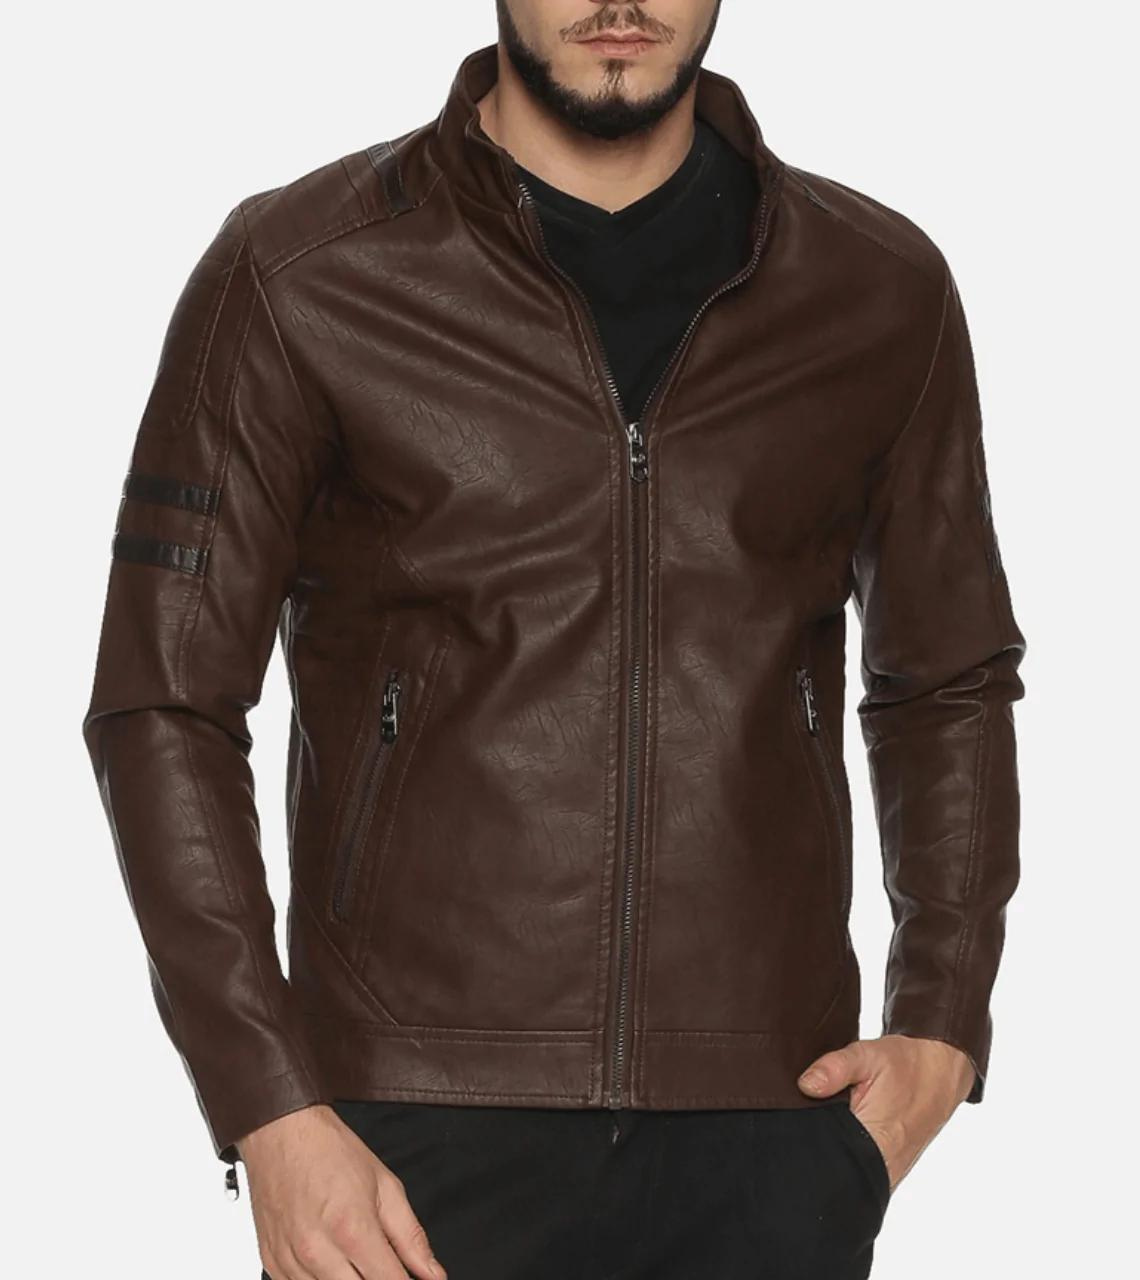 Elegant Dark Brown Leather Jacket For Men's